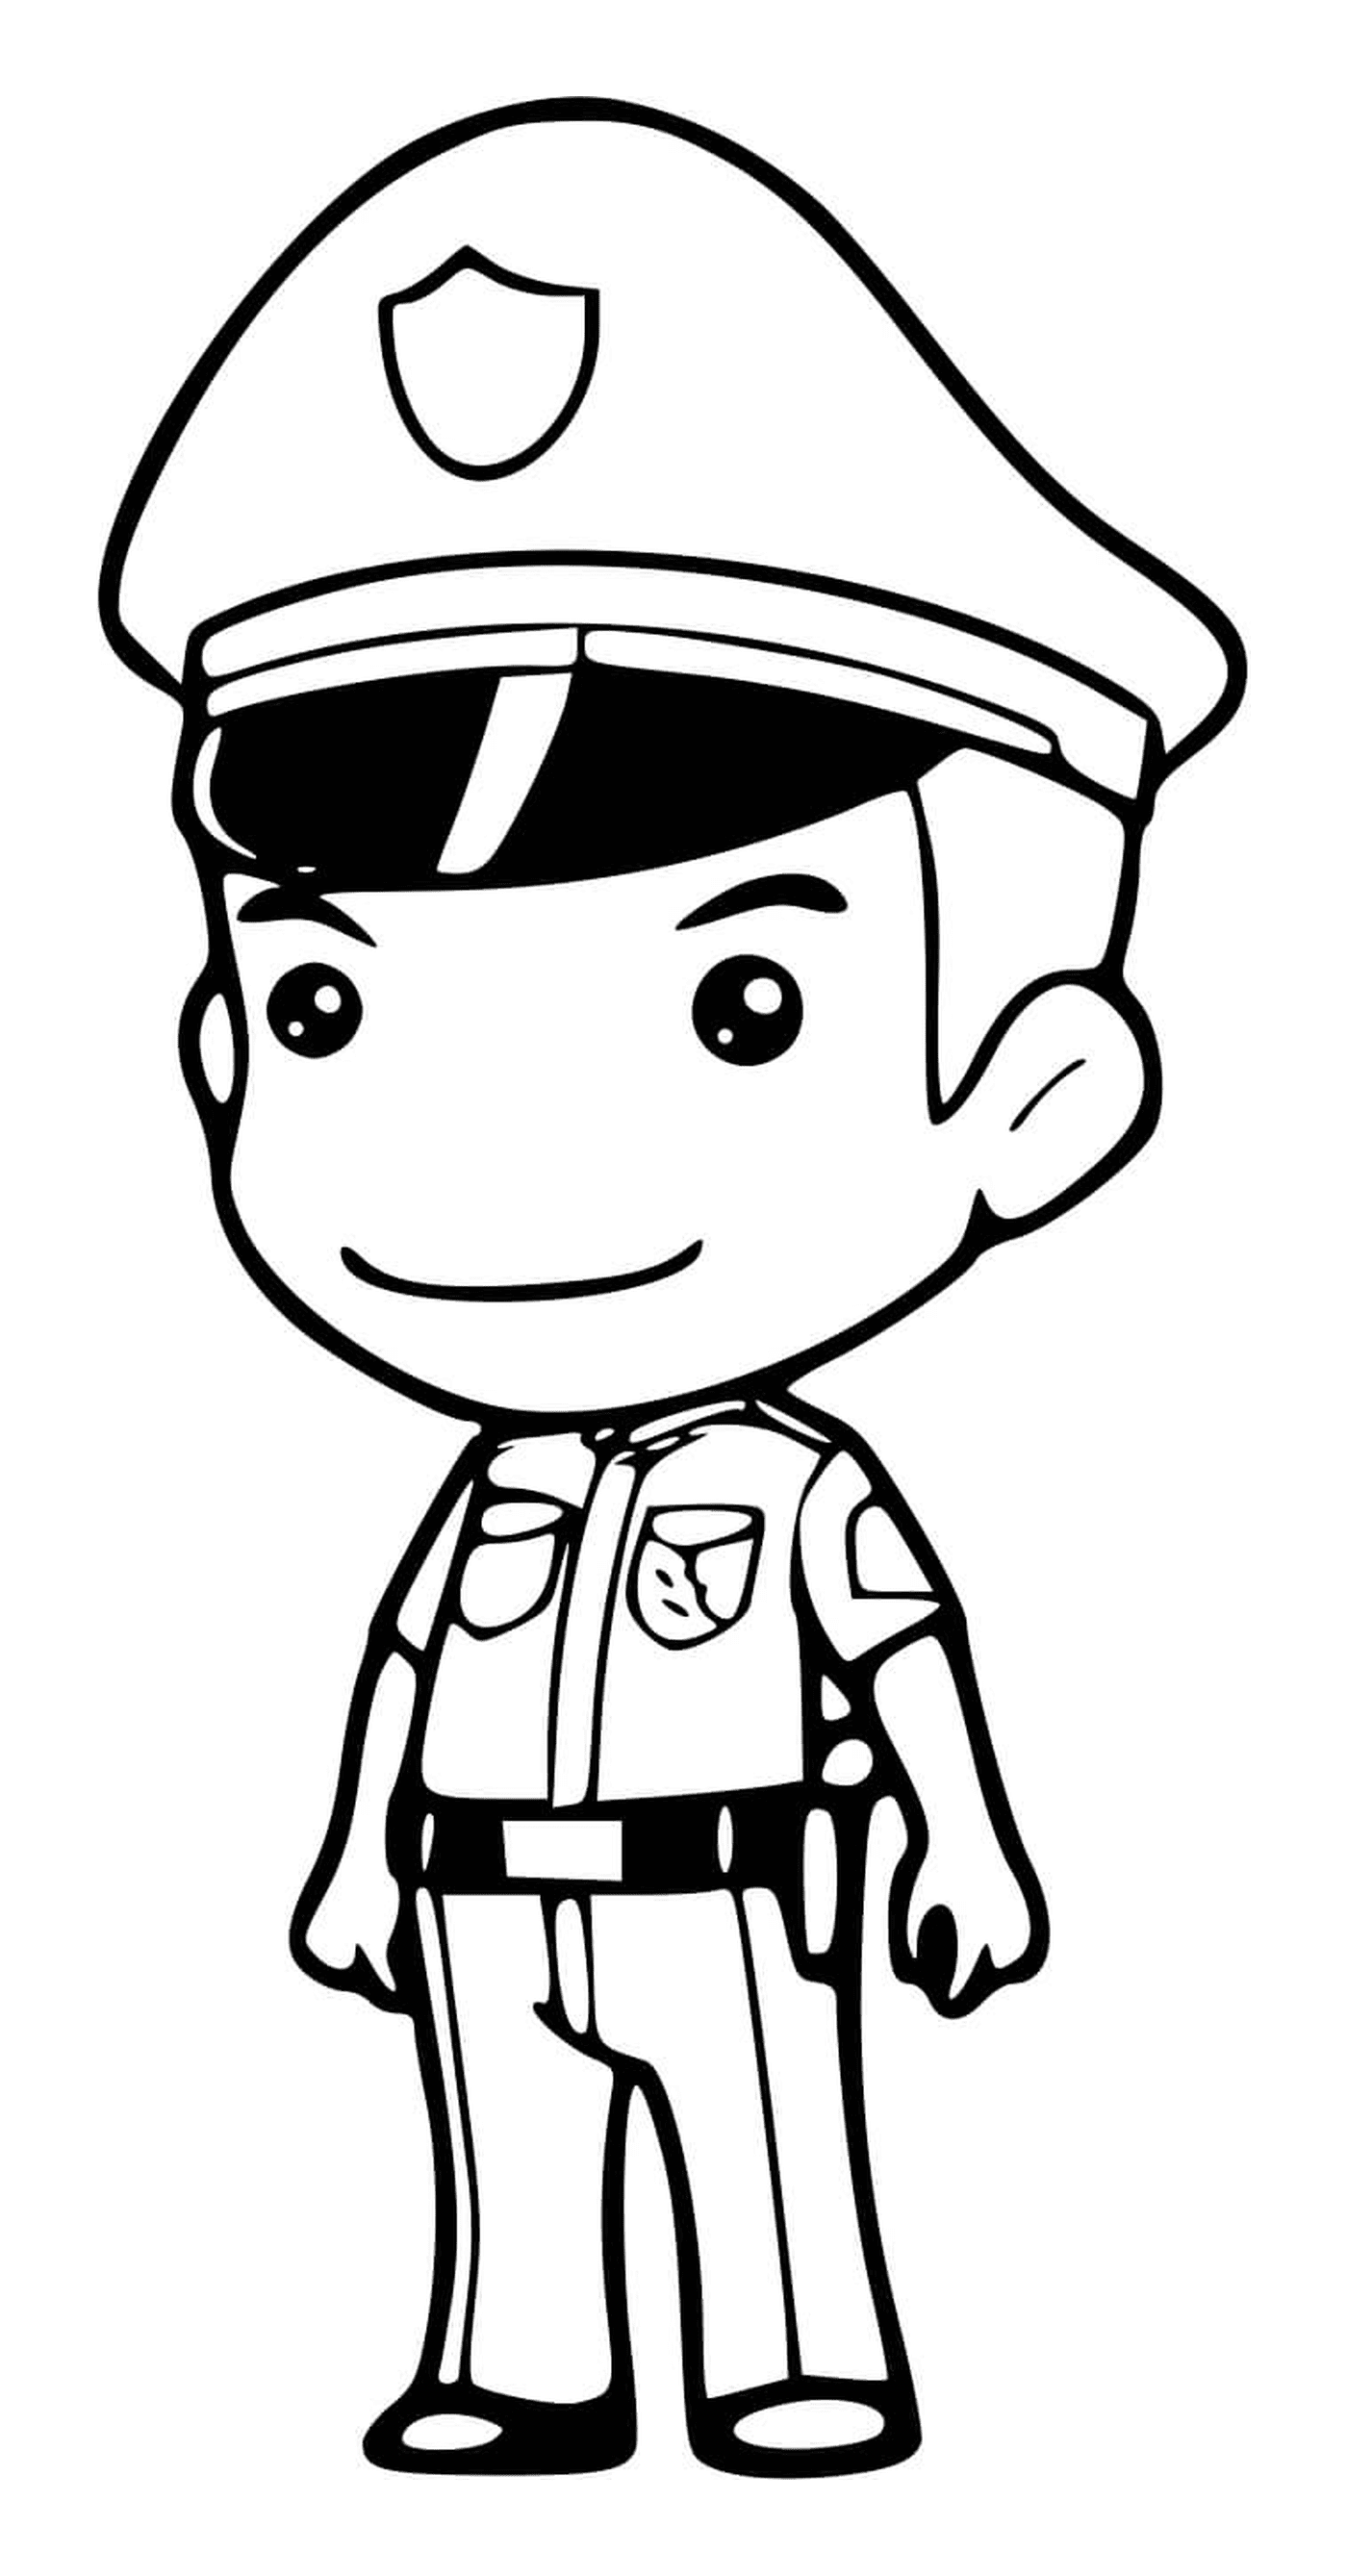  Policial de plantão 